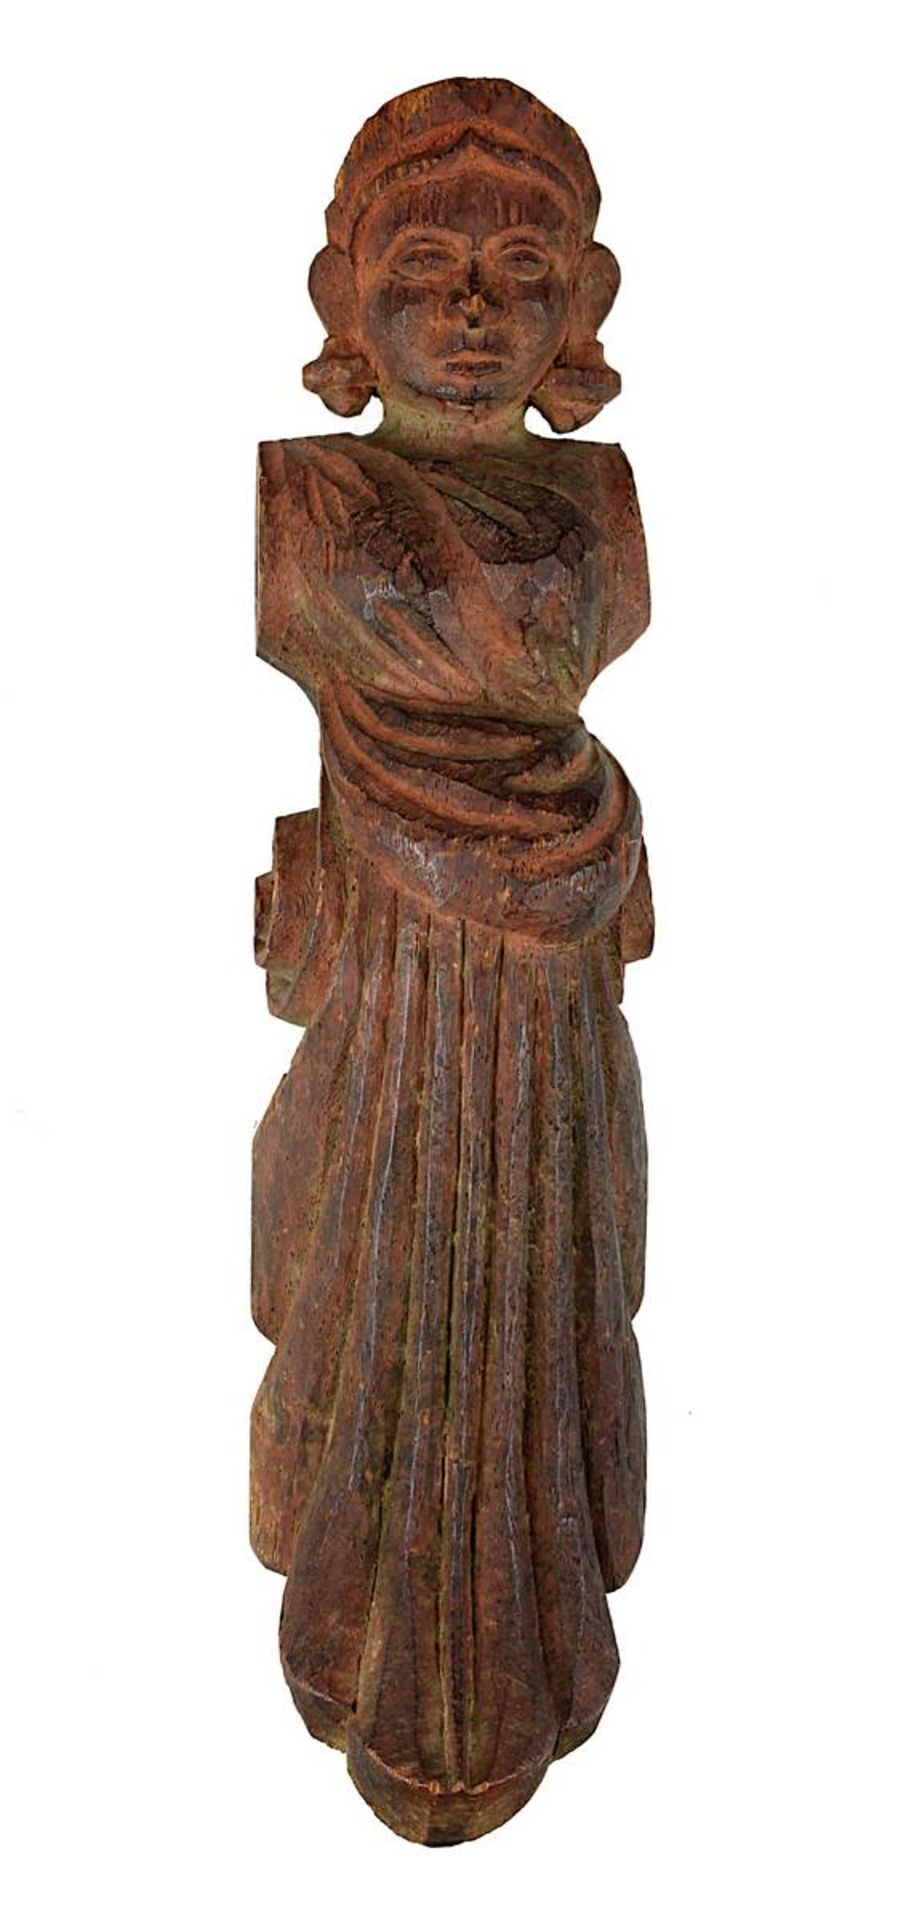 Geschmückte Frau als kleine Karyatidenfigur, Südindien, 19. Jh., Holz geschnitzt, mit Farbresten und